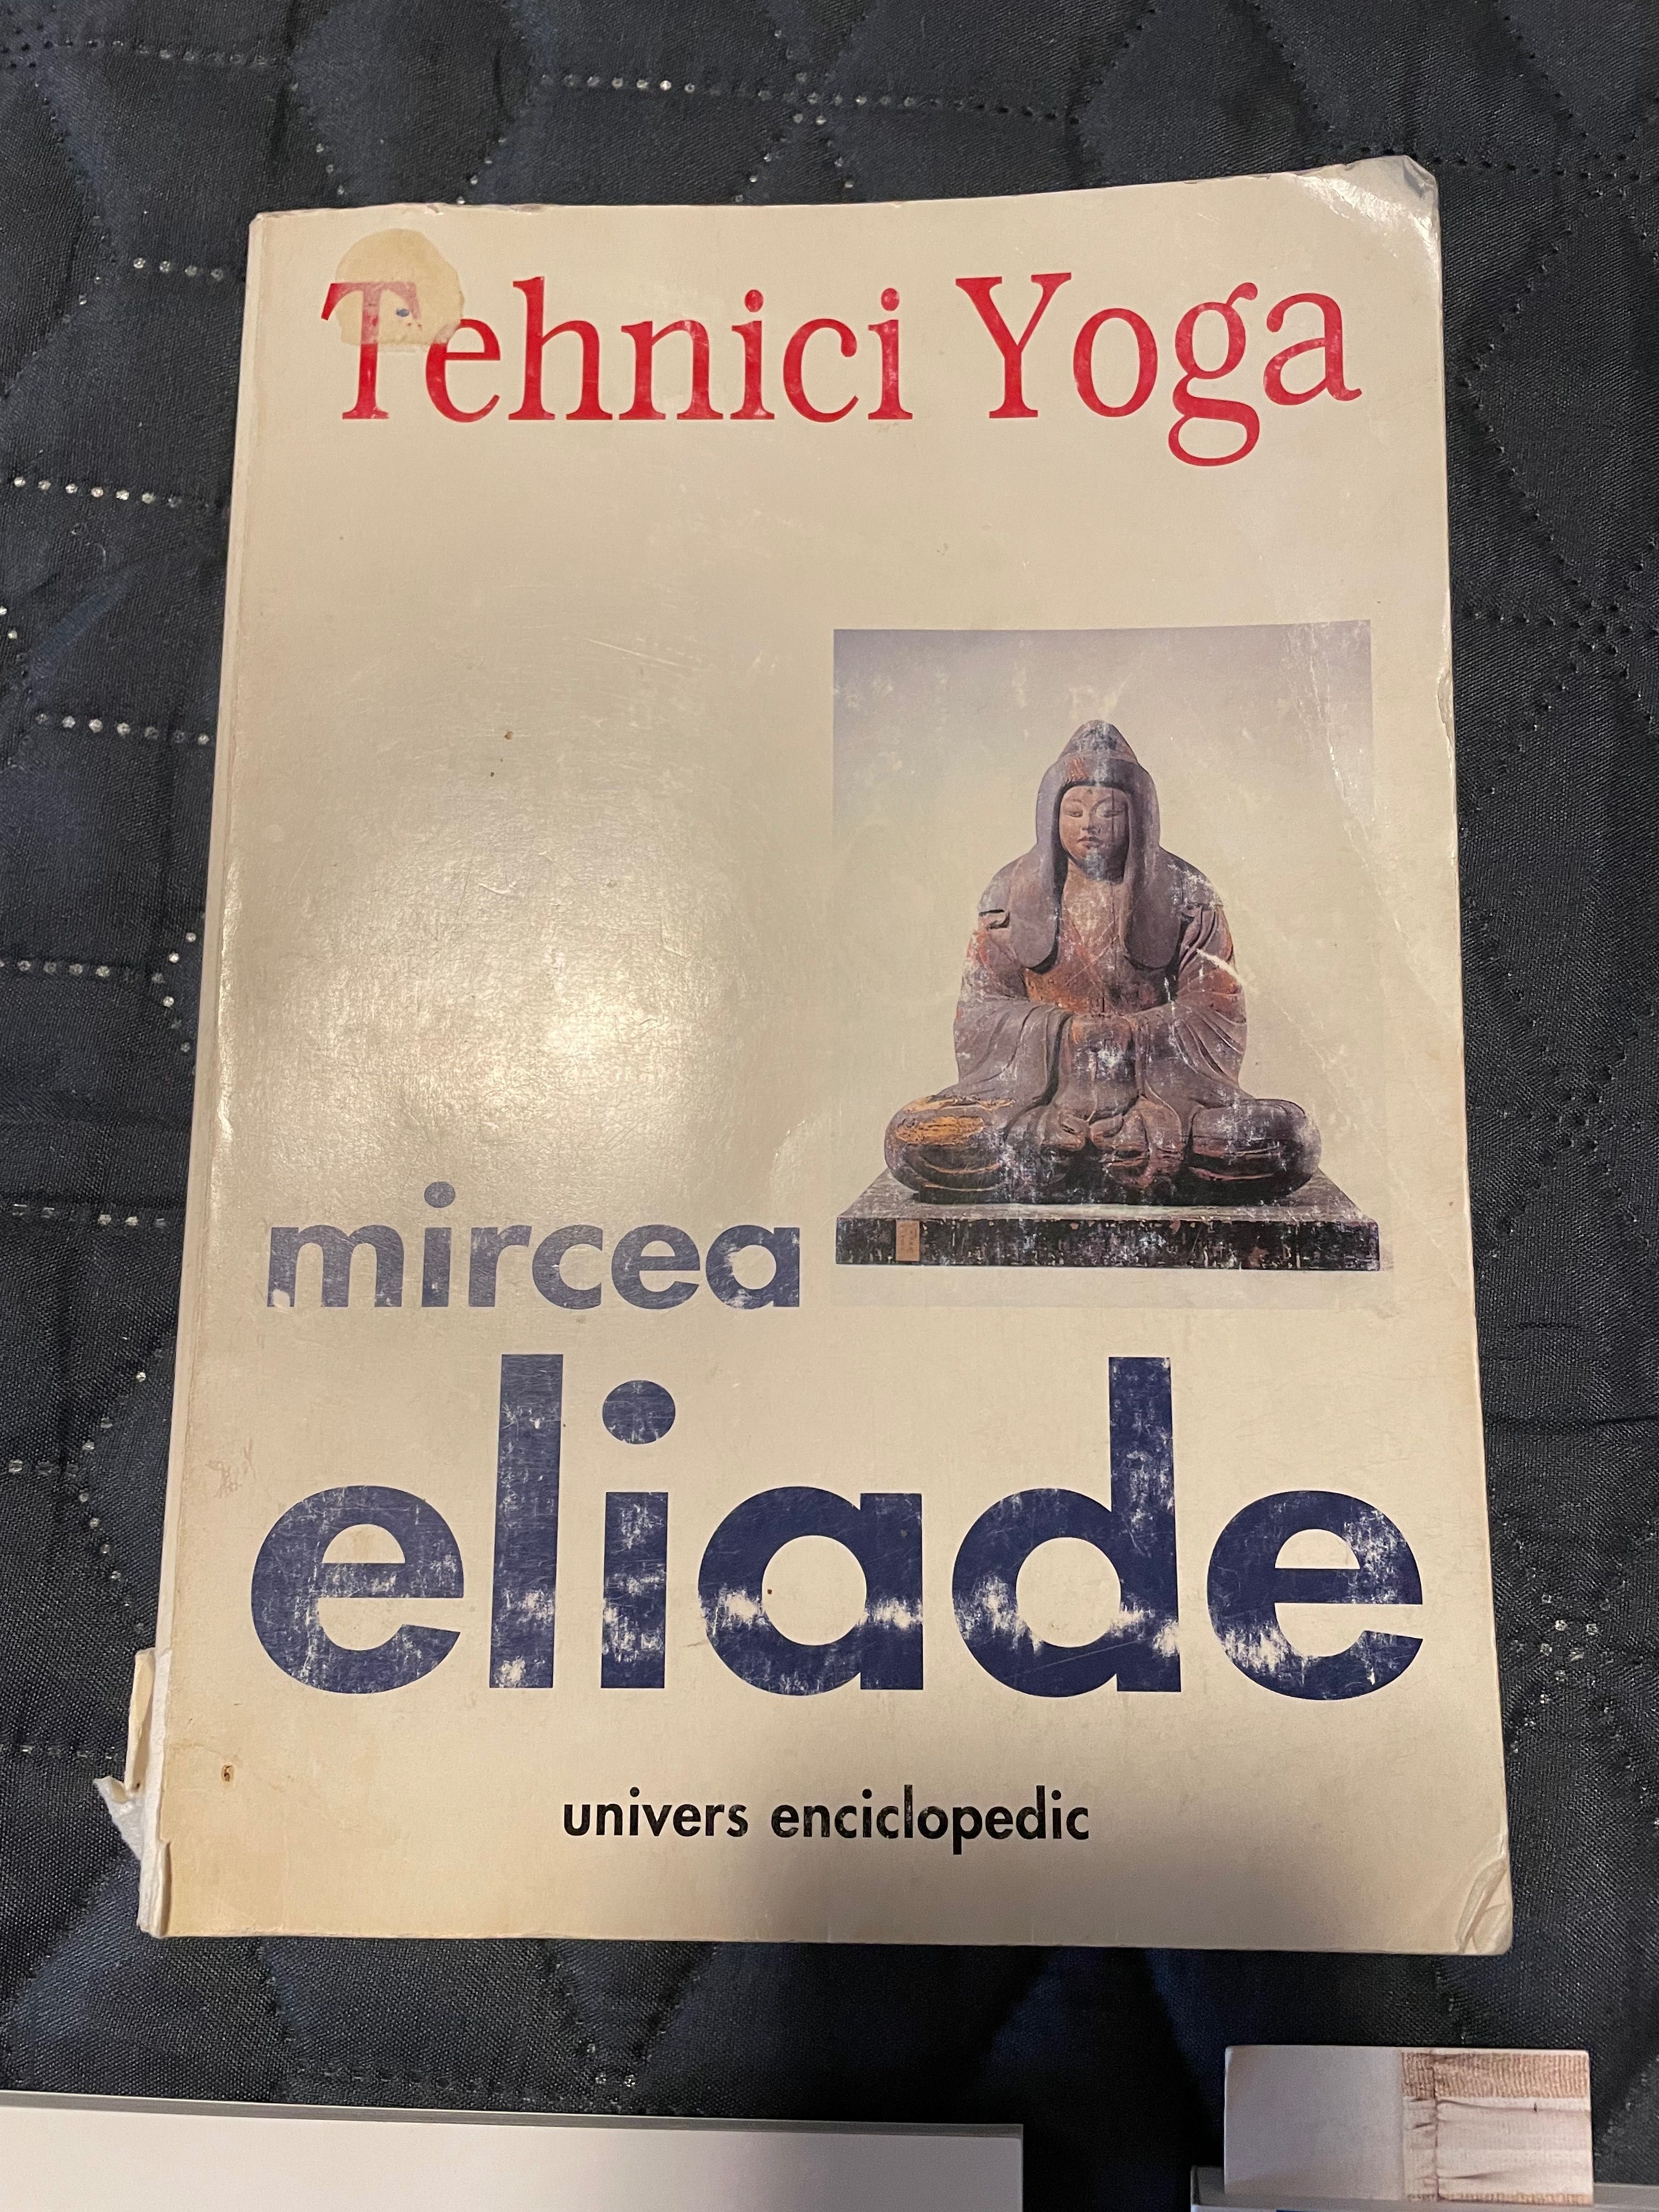 Tehnici Yoga de Mircea Eliade + 2 cărți de poezii japoneze haiku